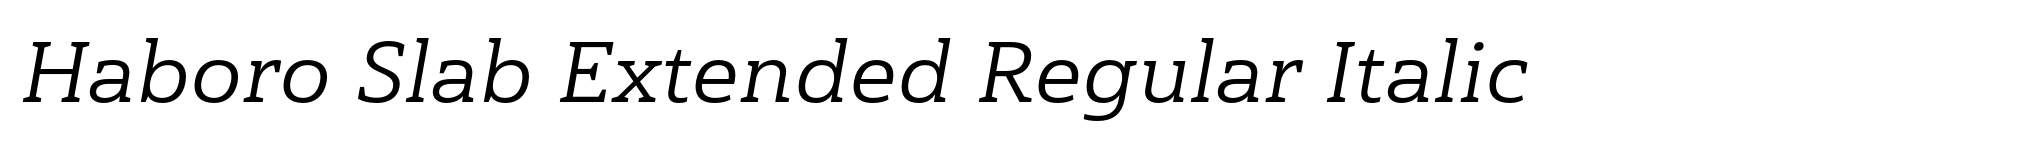 Haboro Slab Extended Regular Italic image